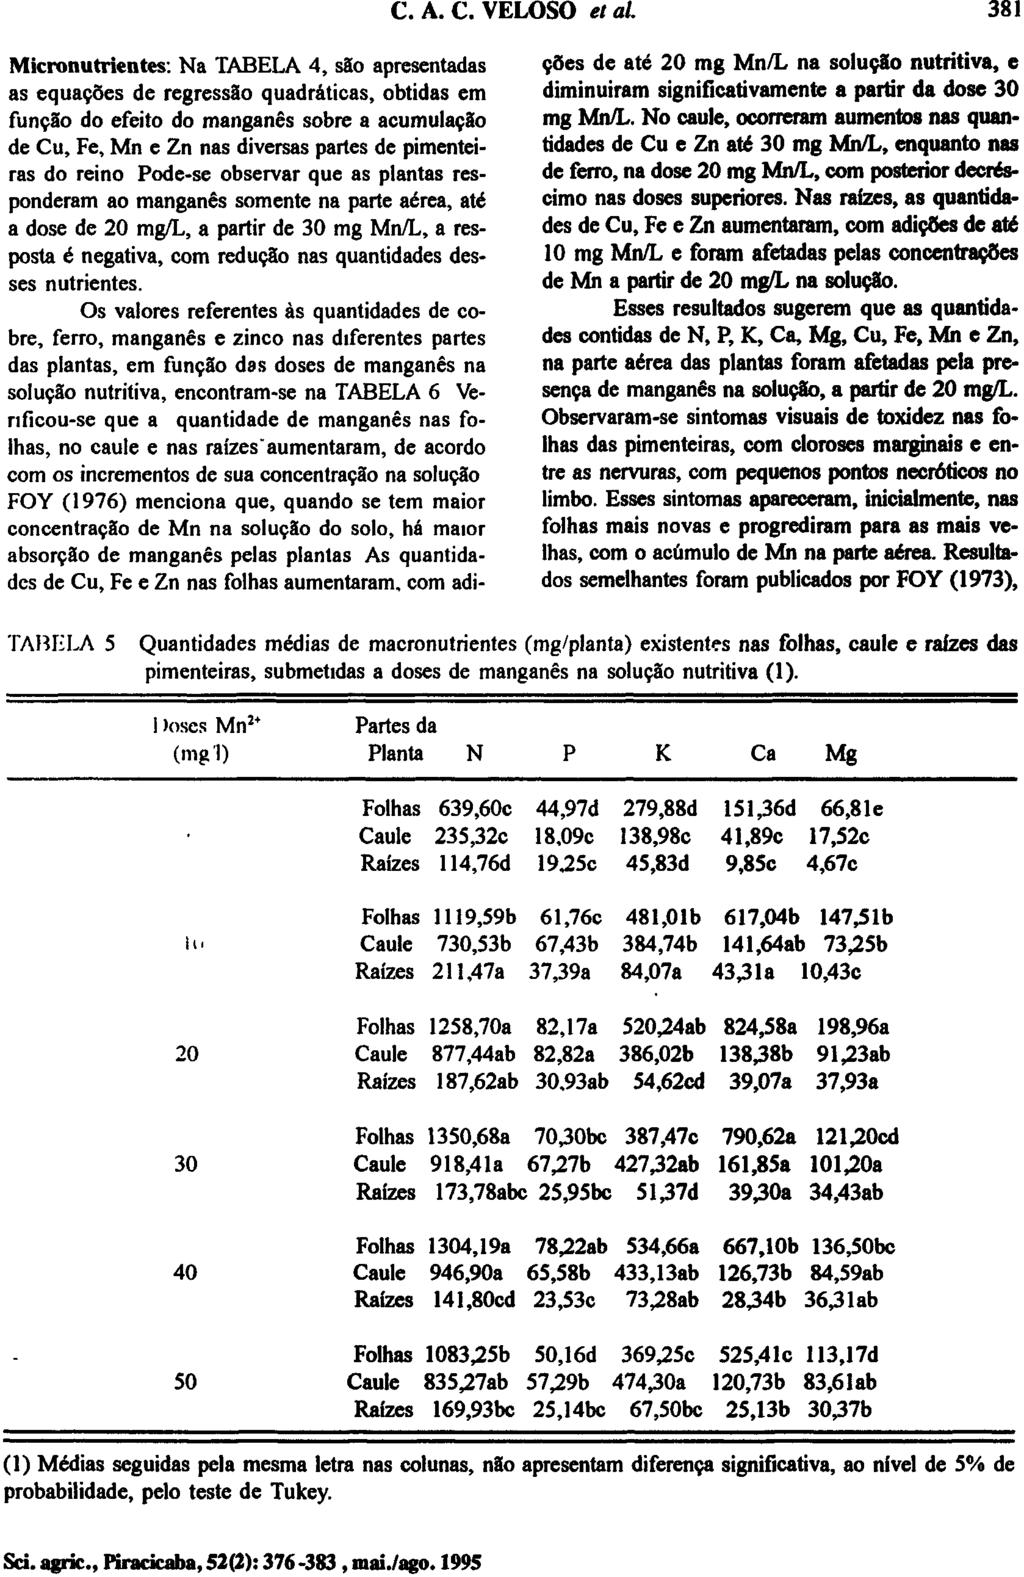 Micronutrientes: Na TABELA 4, são apresentadas as equações de regressão quadráticas, obtidas em função do efeito do manganês sobre a acumulação de Cu, Fe, Mn e Zn nas diversas partes de pimenteiras